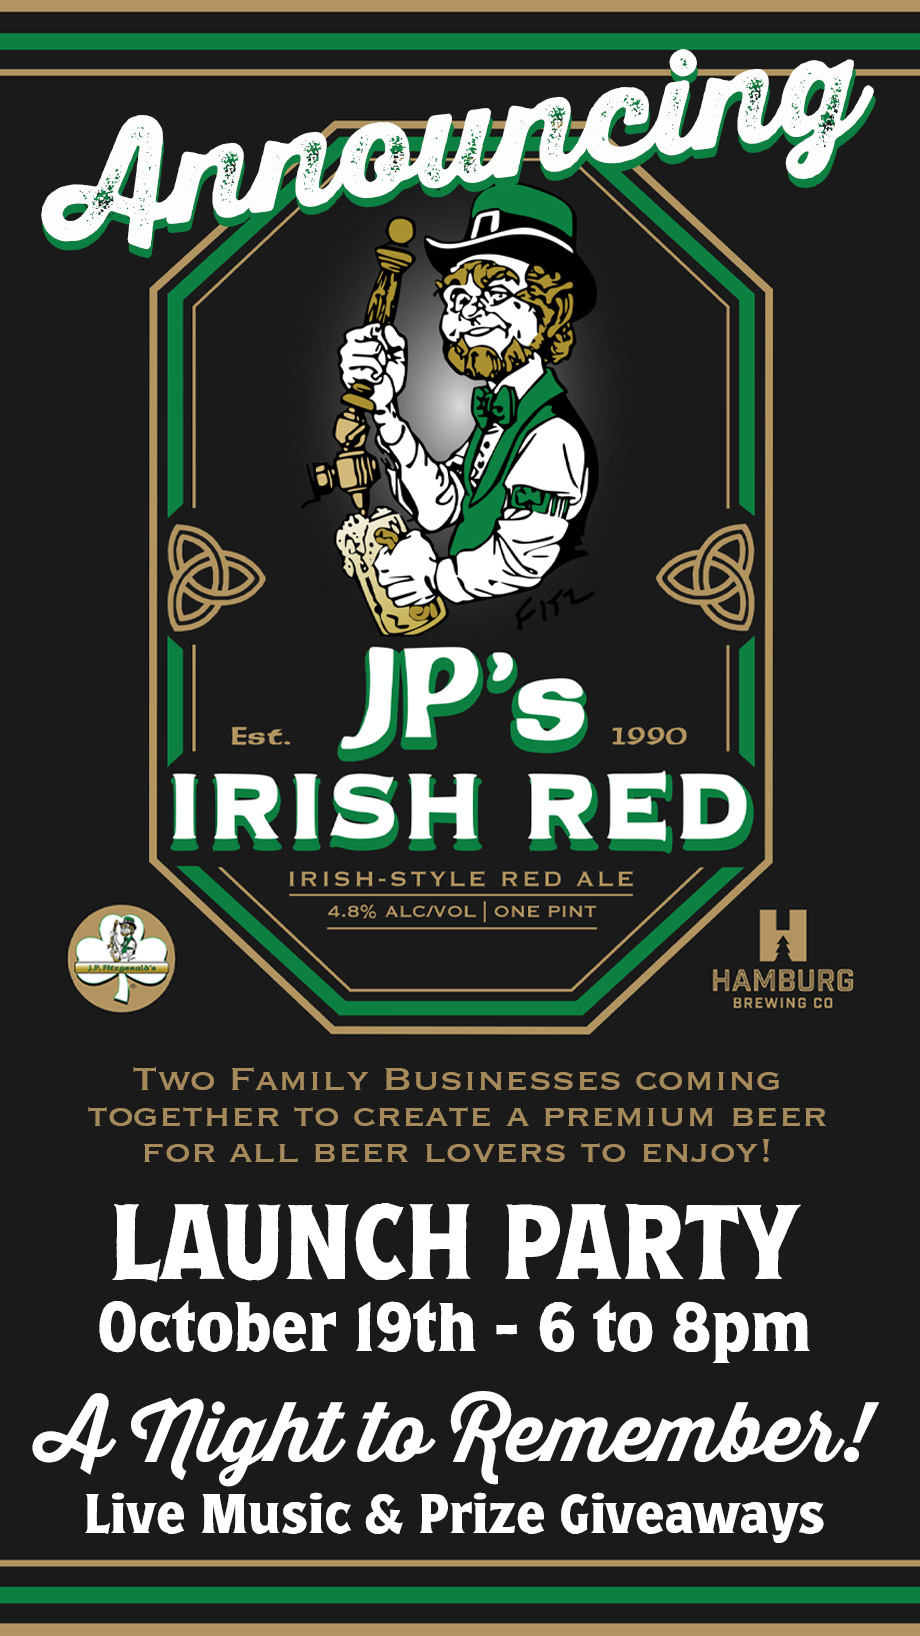 JPs Irish Red